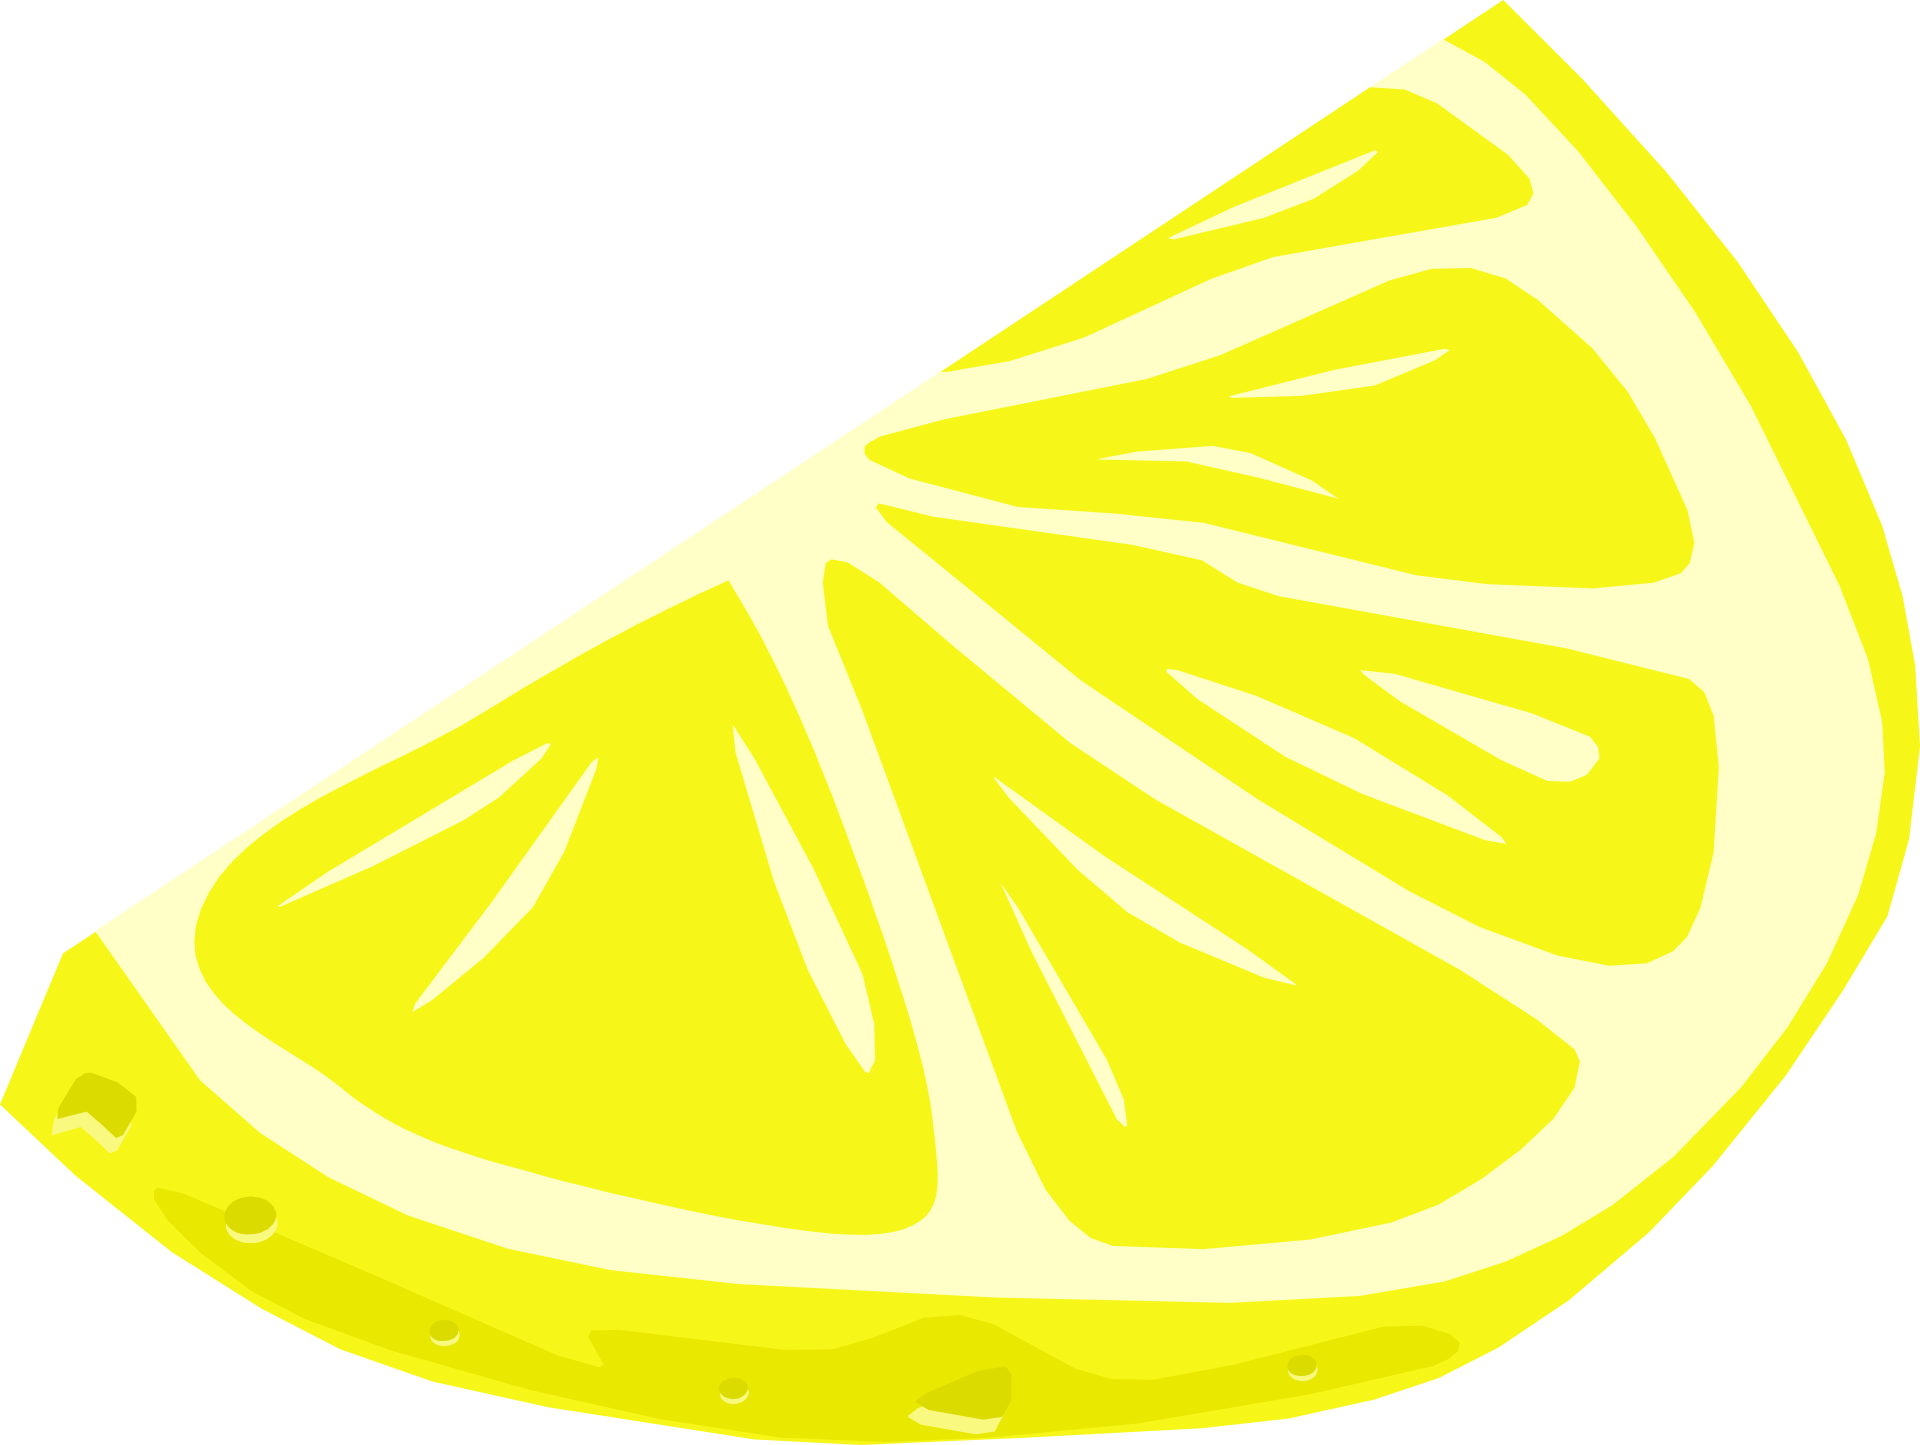 A Lemon Slice On A Black Background